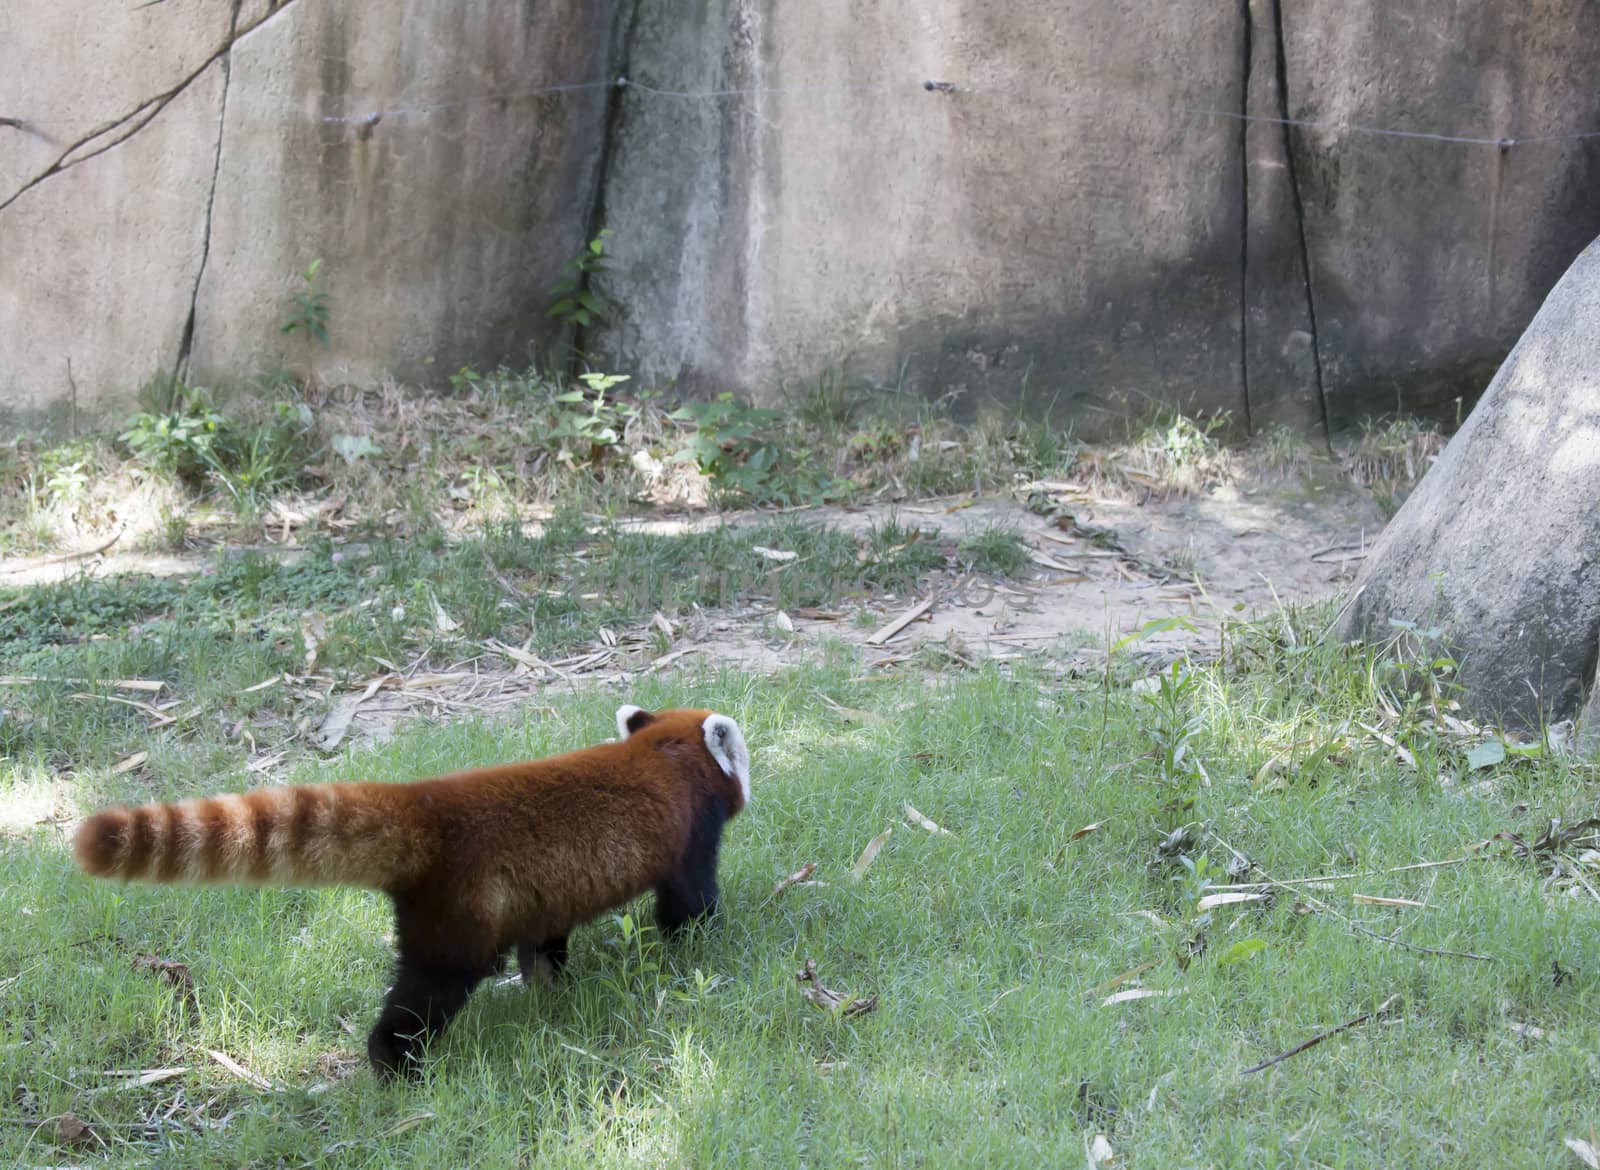 Red panda (Ailurus fulgens), or red bear-cat, walking away